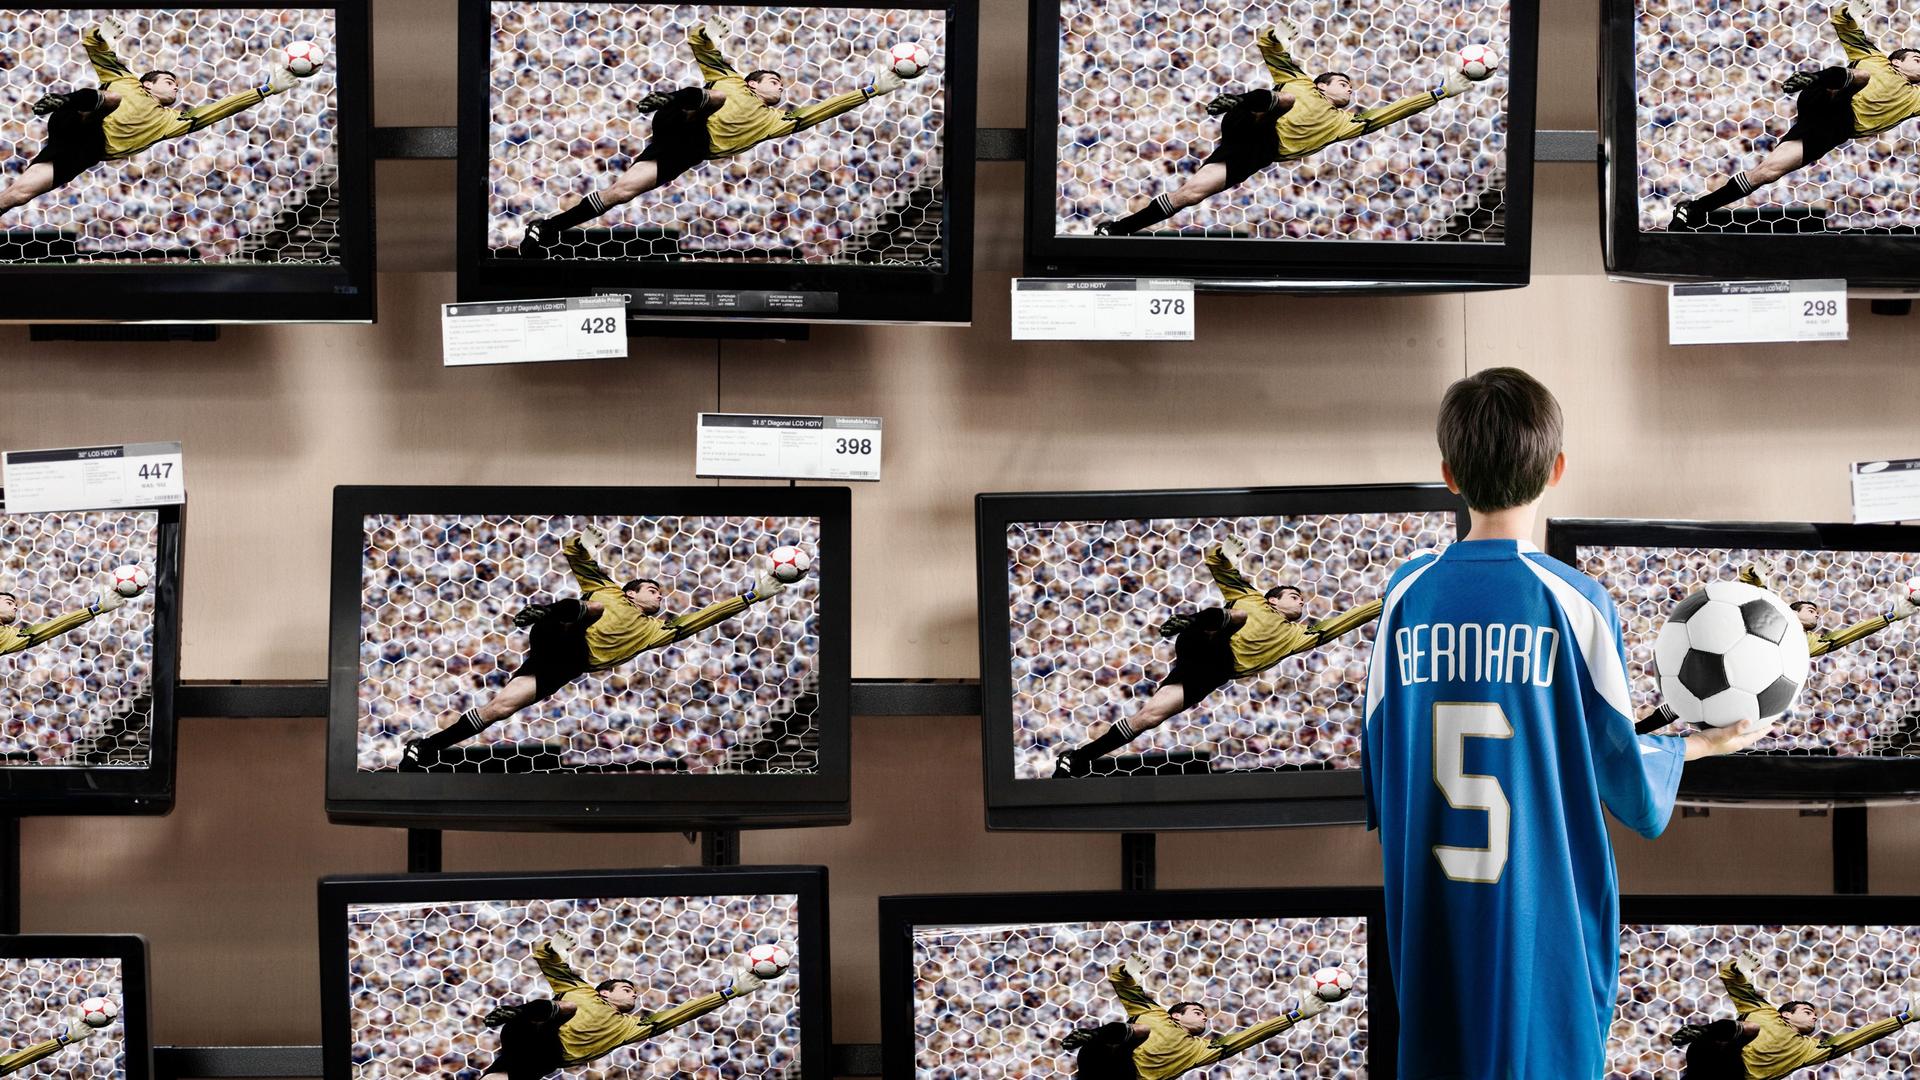 Ein Jungs mit einem Fußballtrikot an und einem Fußball in der Hand steht vor Fernsehern in einem Laden.